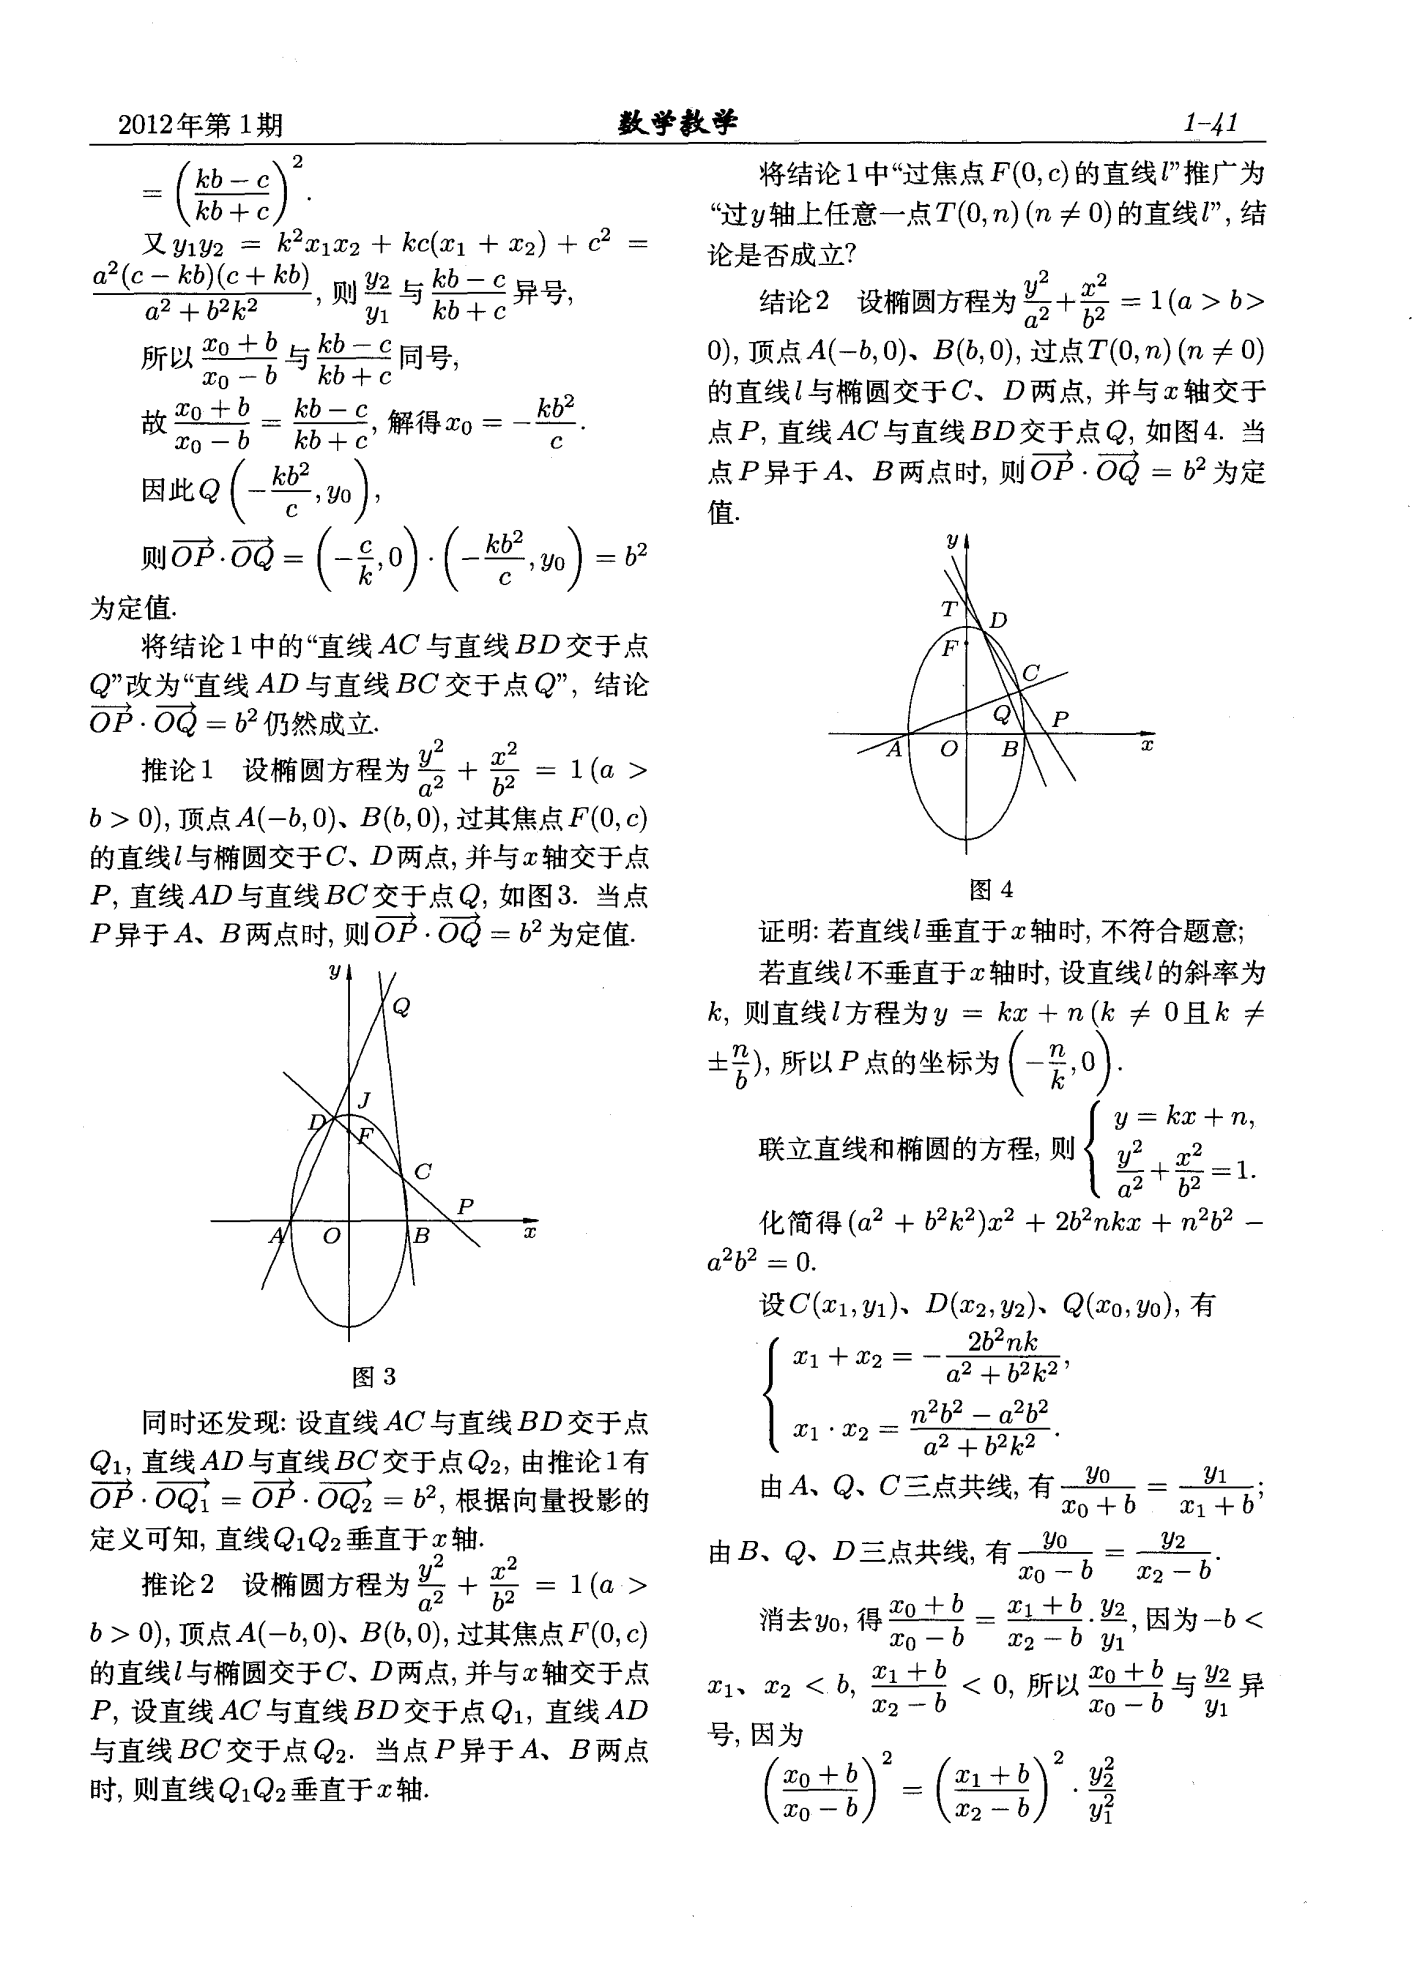 2011年四川高考解析几何题的探究